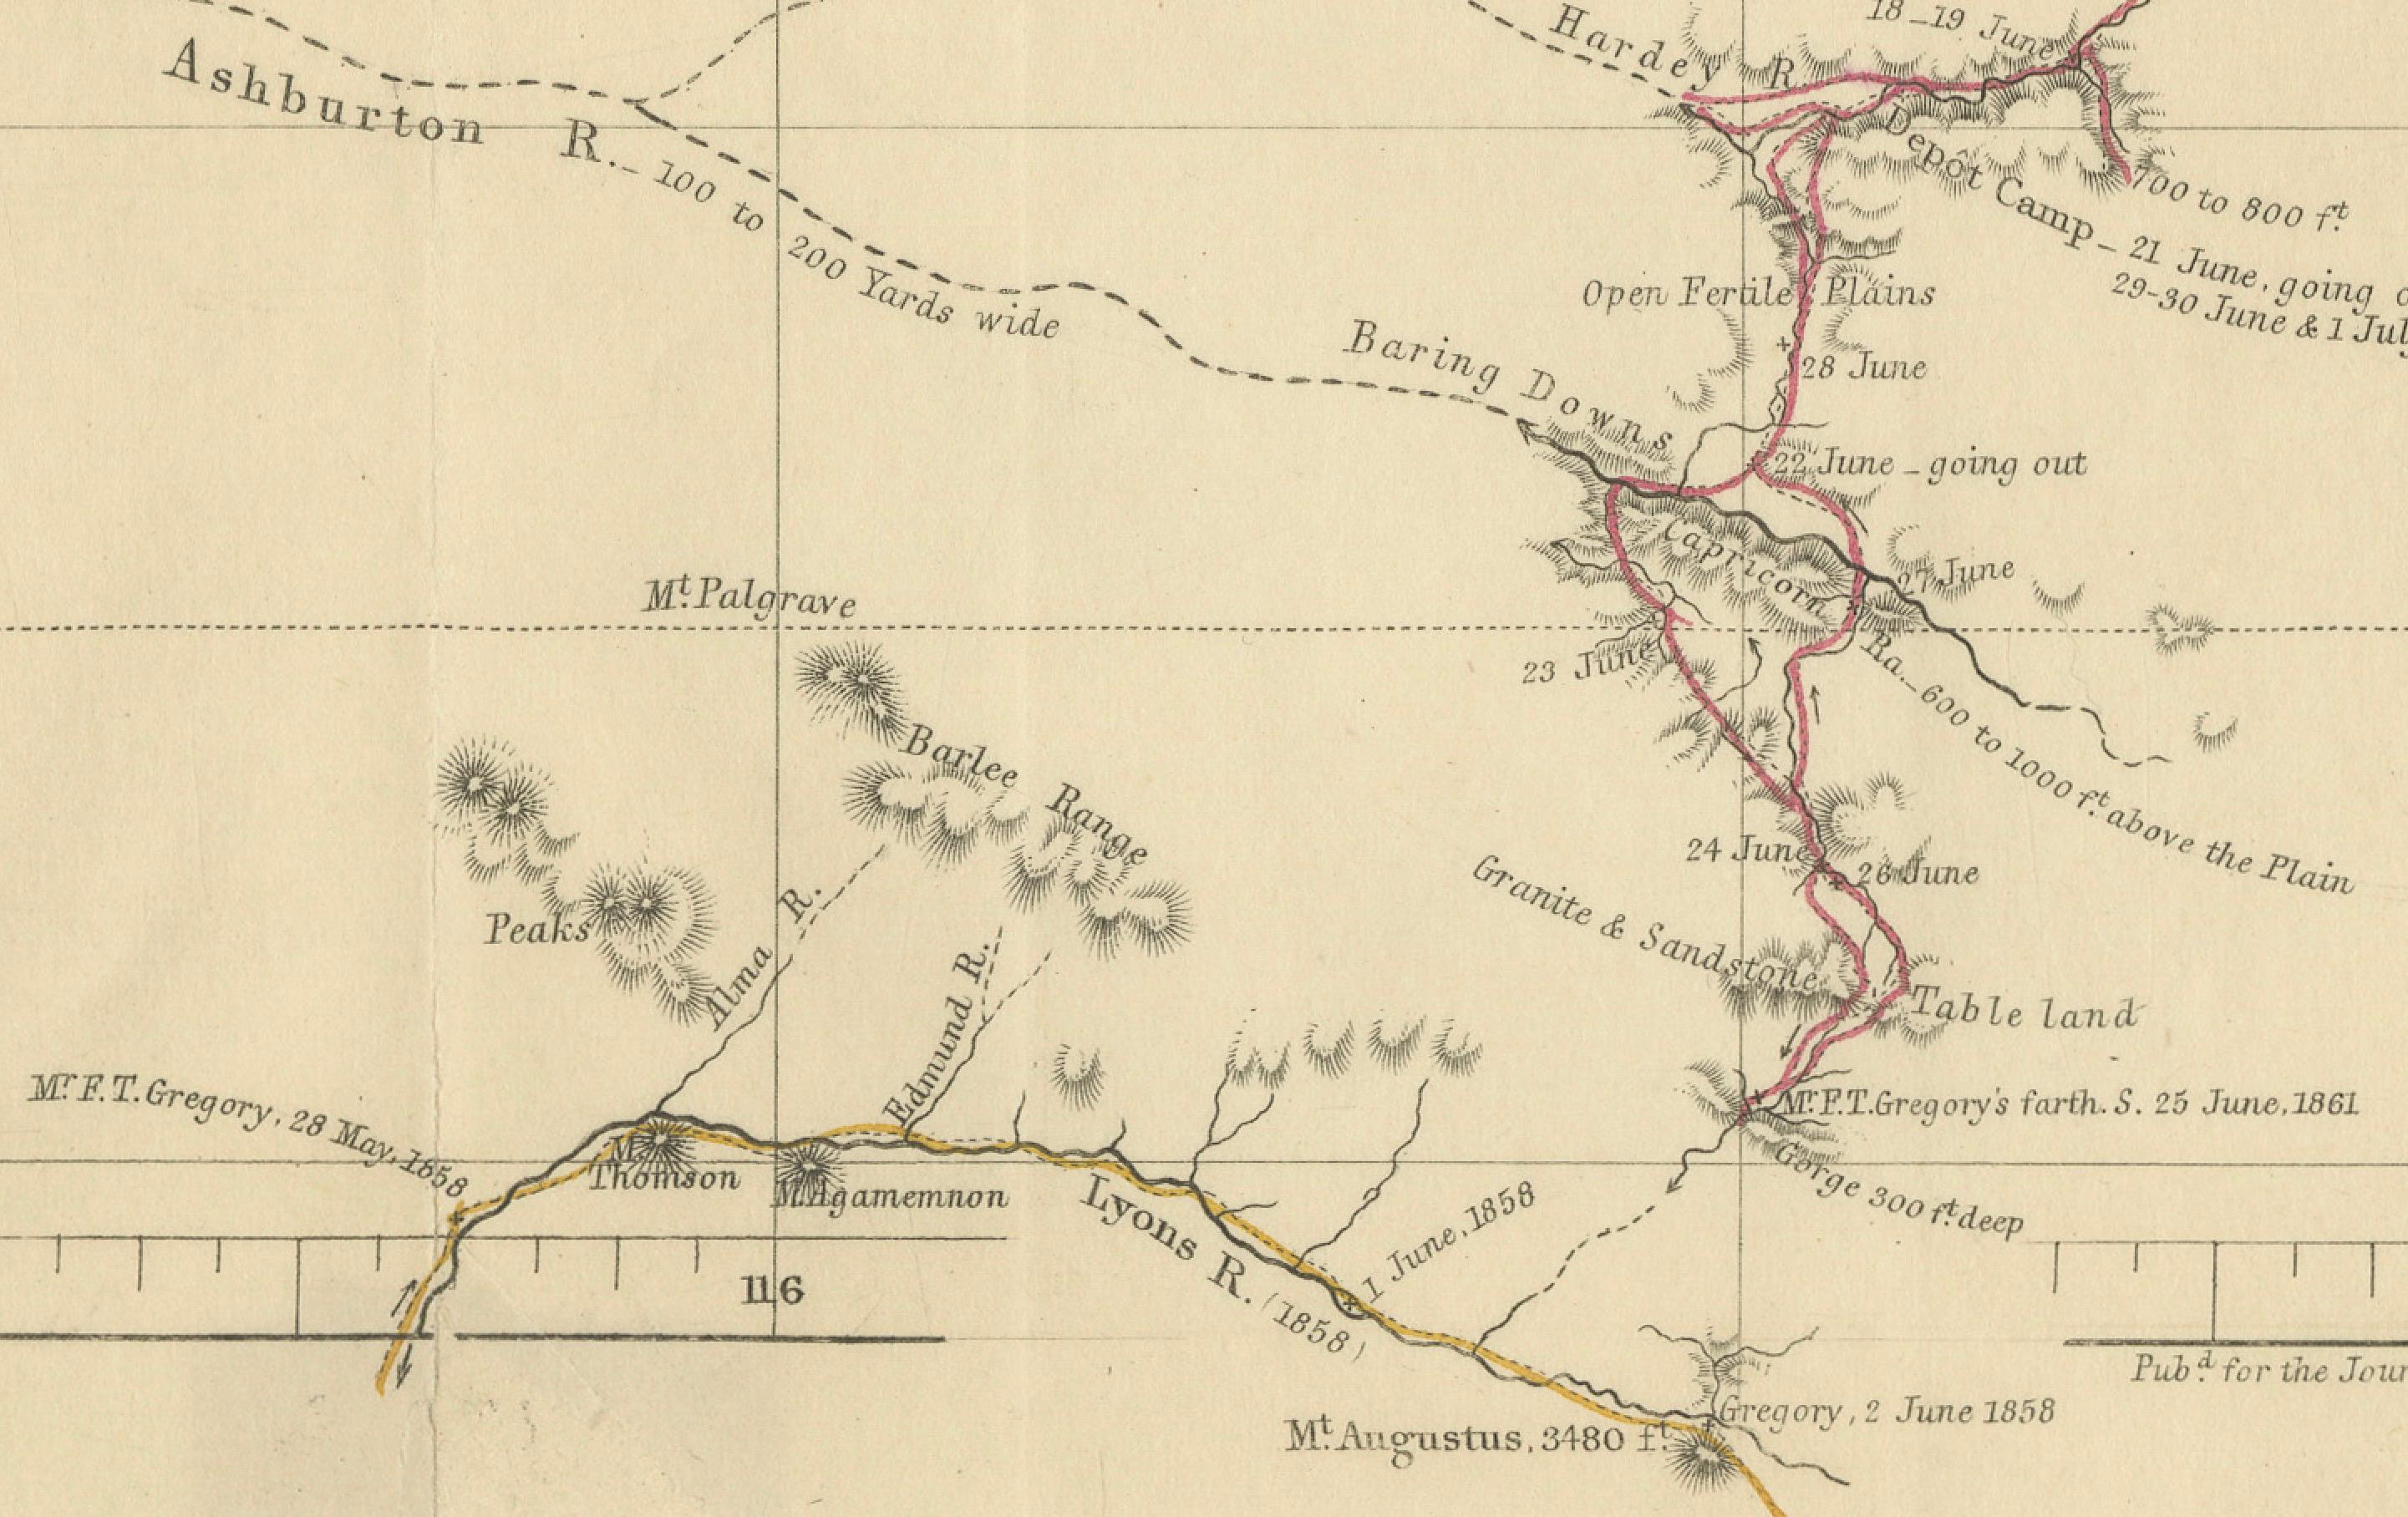 Die Karte  stellt die Route dar, die während des F.T. genommen wurde. Gregorys nordwestaustralische Expedition von 1861. 

Diese Erkundung war eine bedeutende Reise durch die Pilbara-Region, die vom Ashburton River bis zum Dampier-Archipel und dem